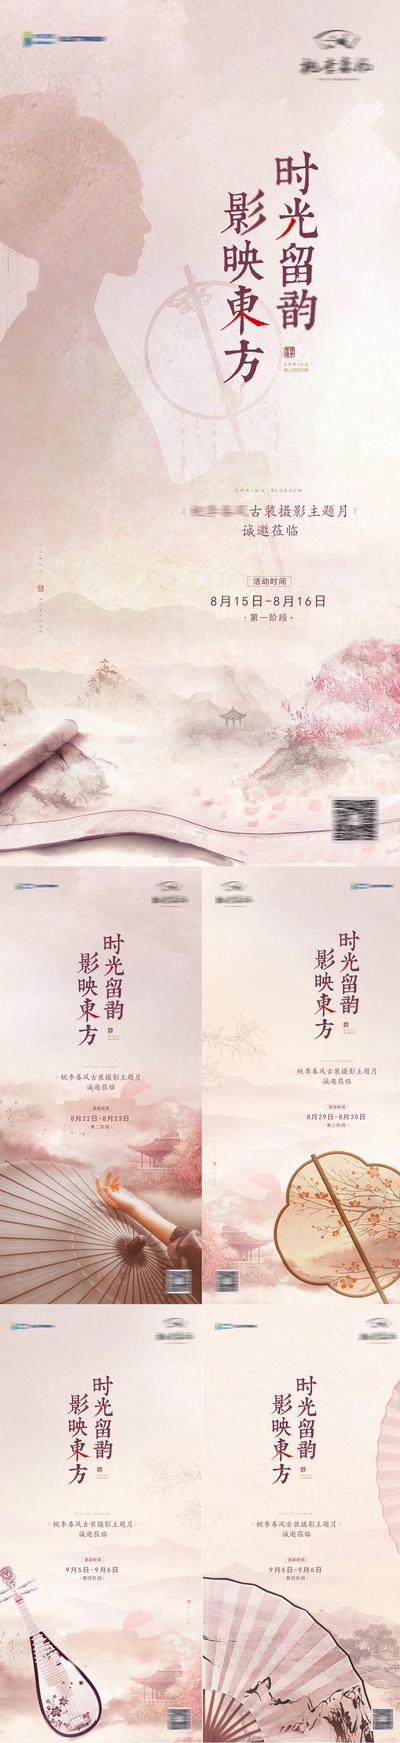 南门网 海报 房地产 摄影 纸扇 琵琶 古风 中国风 中式 活动 系列